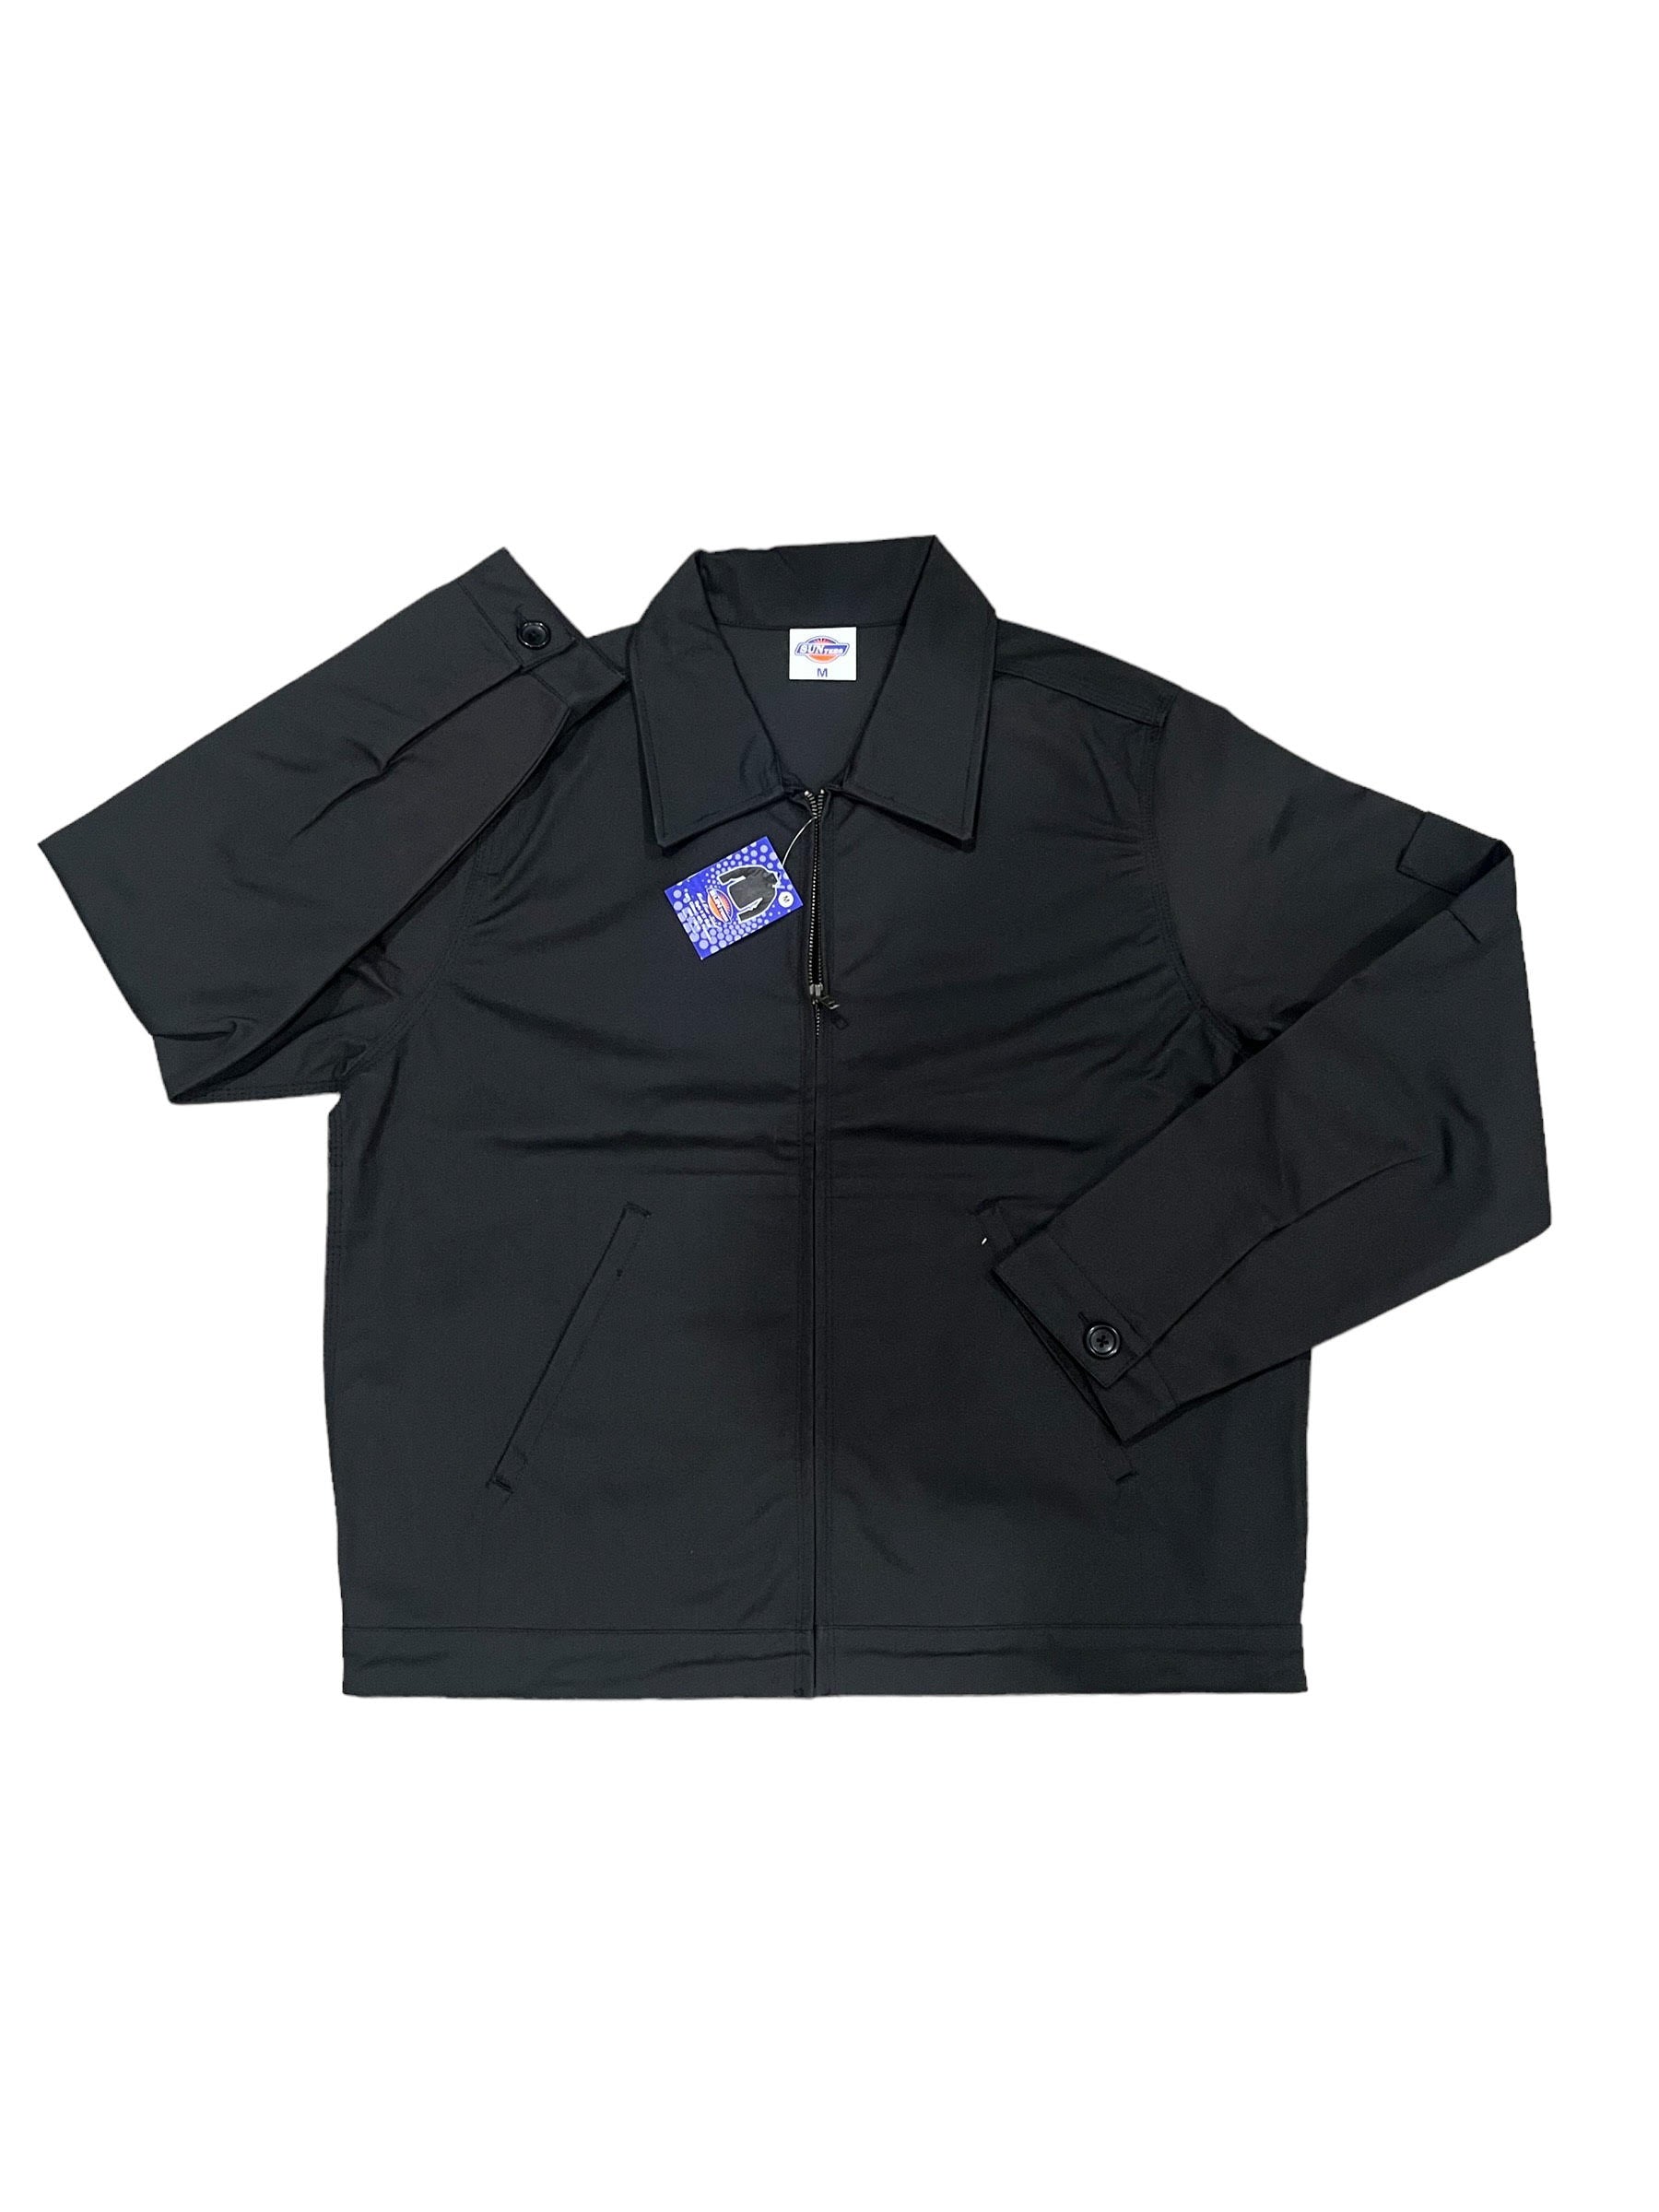 Black Dickie Style Blank Jacket